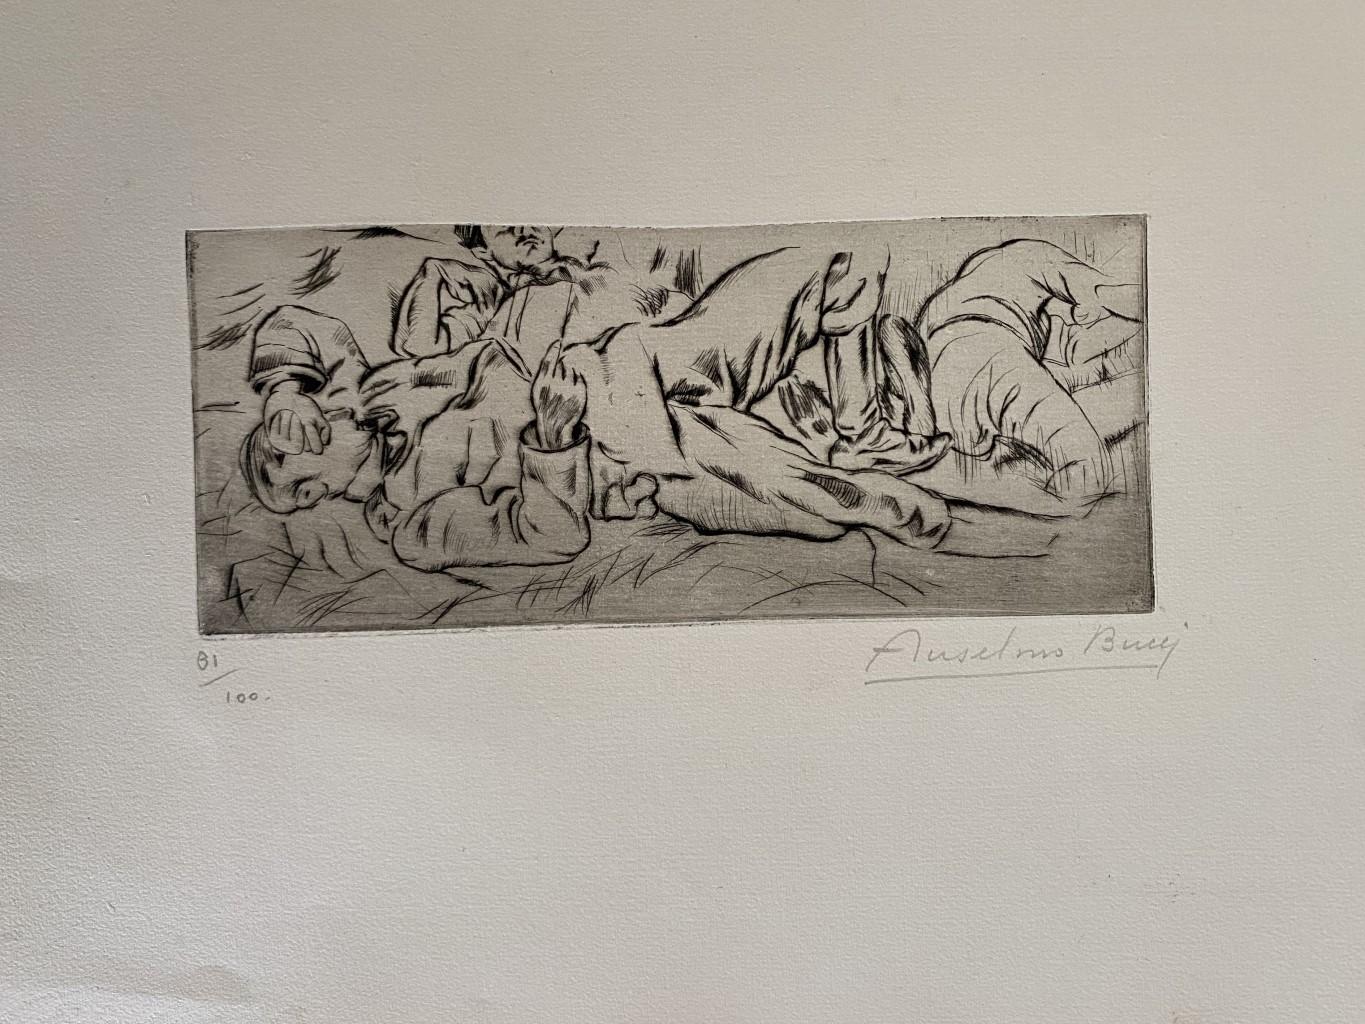 "Military" 1917s est une belle estampe en technique de gravure, réalisée par Anselmo Bucci (1887-1955).

Signé à la main. Numéroté 81/100 des tirages en bas à gauche. Dans le coin inférieur gauche, une iscription illisible écrite au